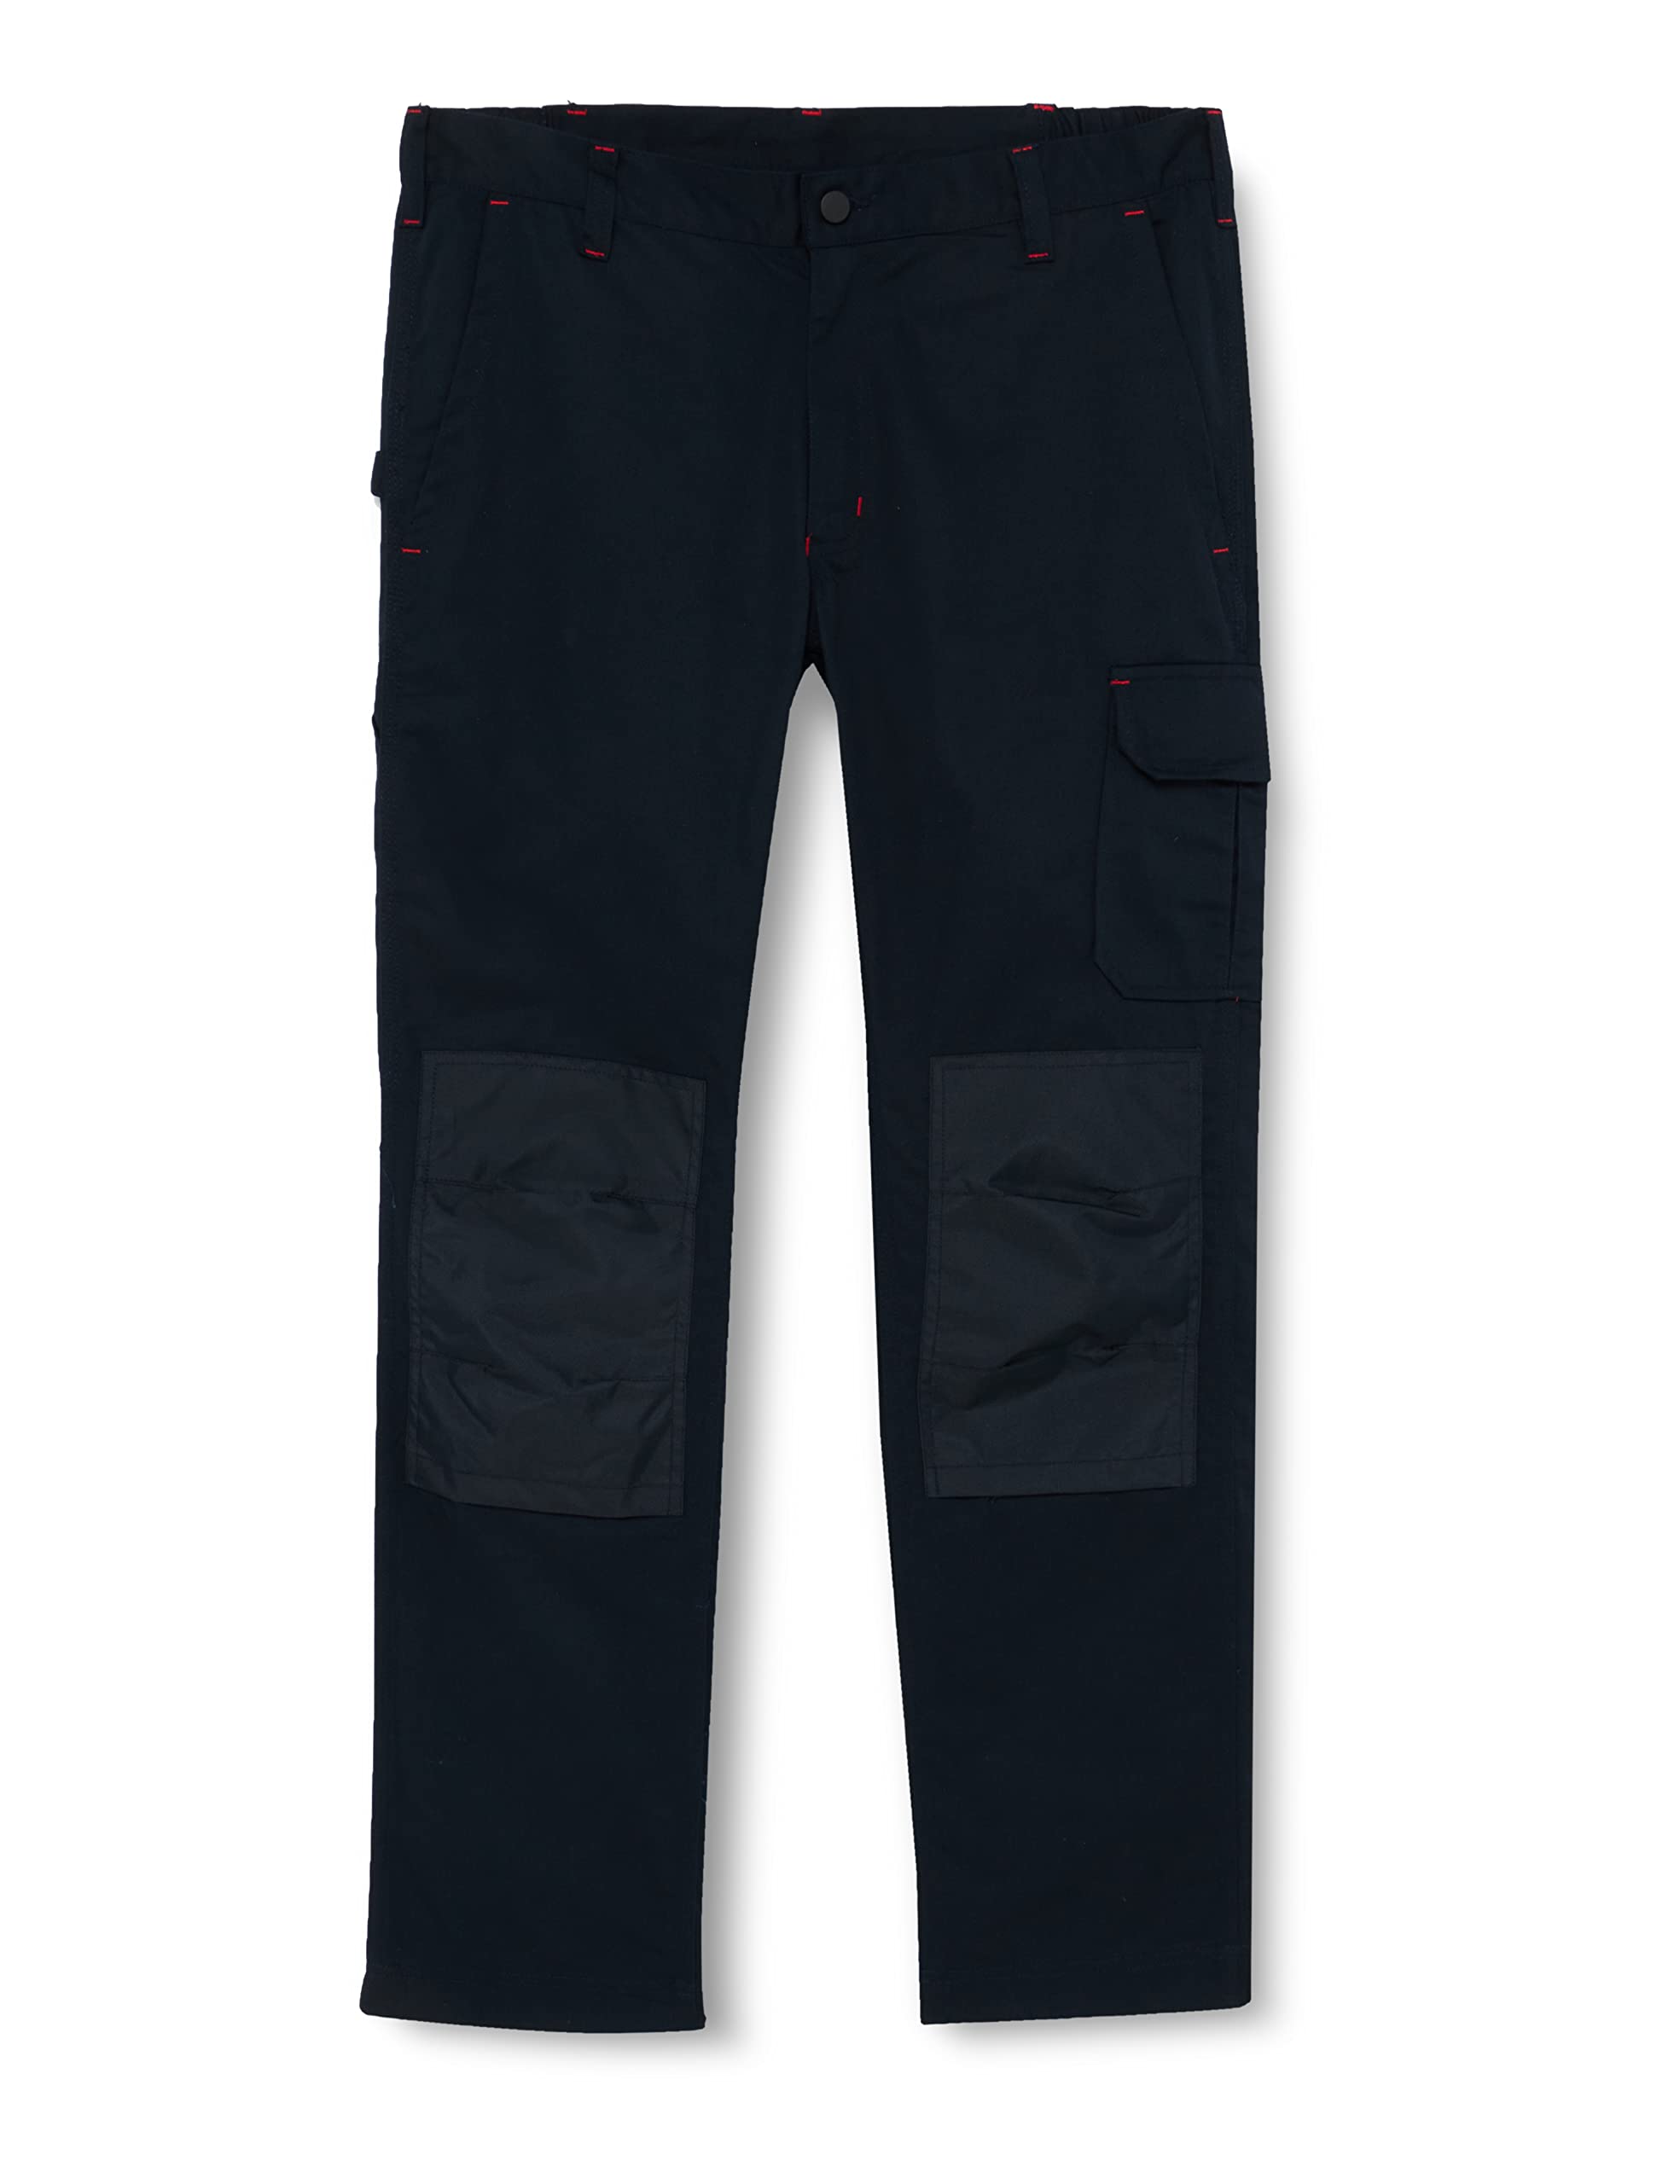 Pantalone da lavoro lungo alfa col.blu scuro tg.56/58